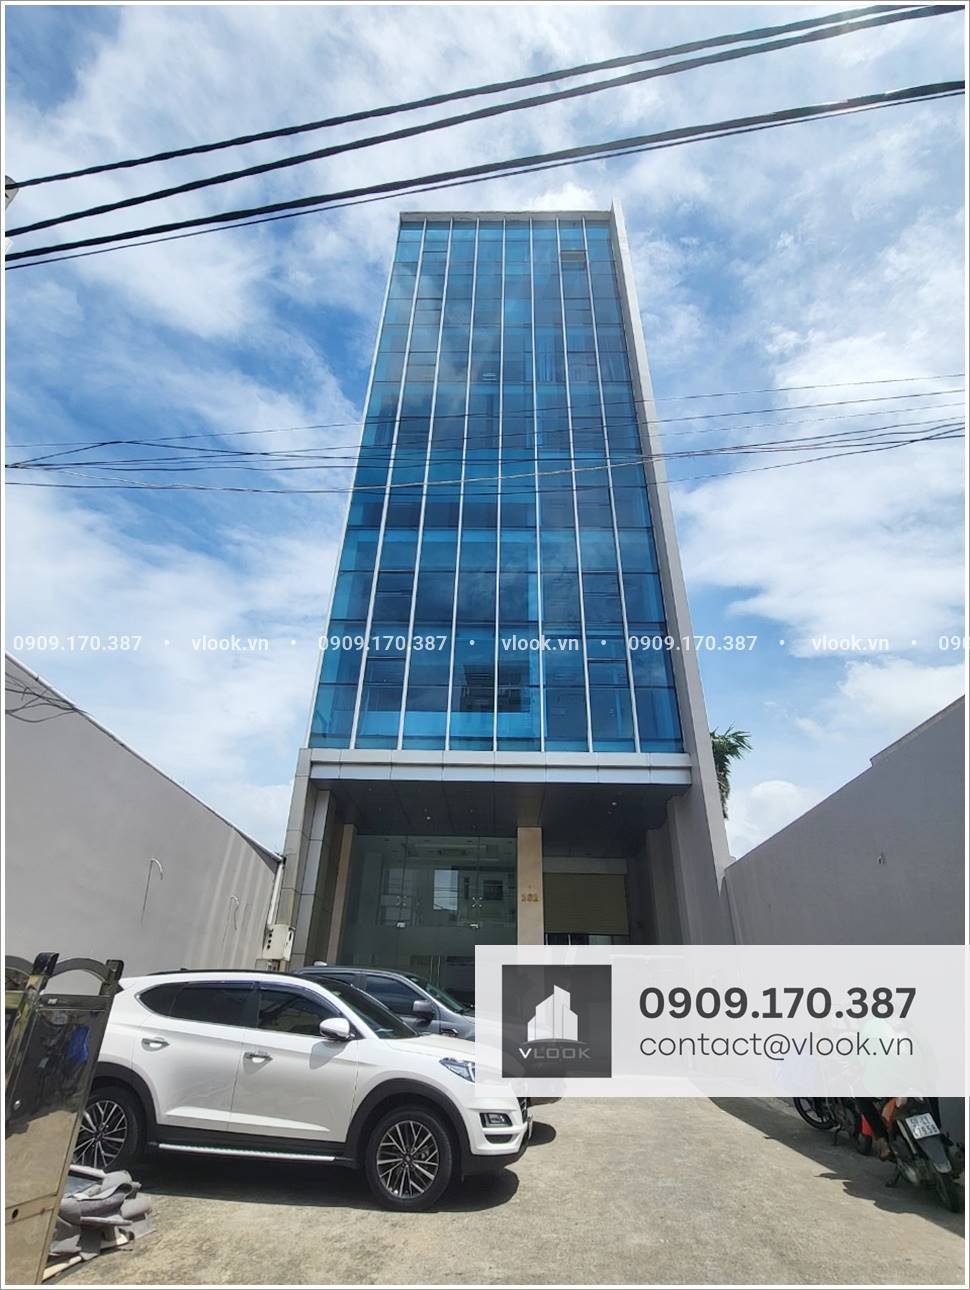 Cao ốc văn phòng cho thuê tòa nhà M.O.R.E 161 Ung Văn Khiêm, Phường 25, Quận Bình Thạnh - vlook.vn - 0909 170 387